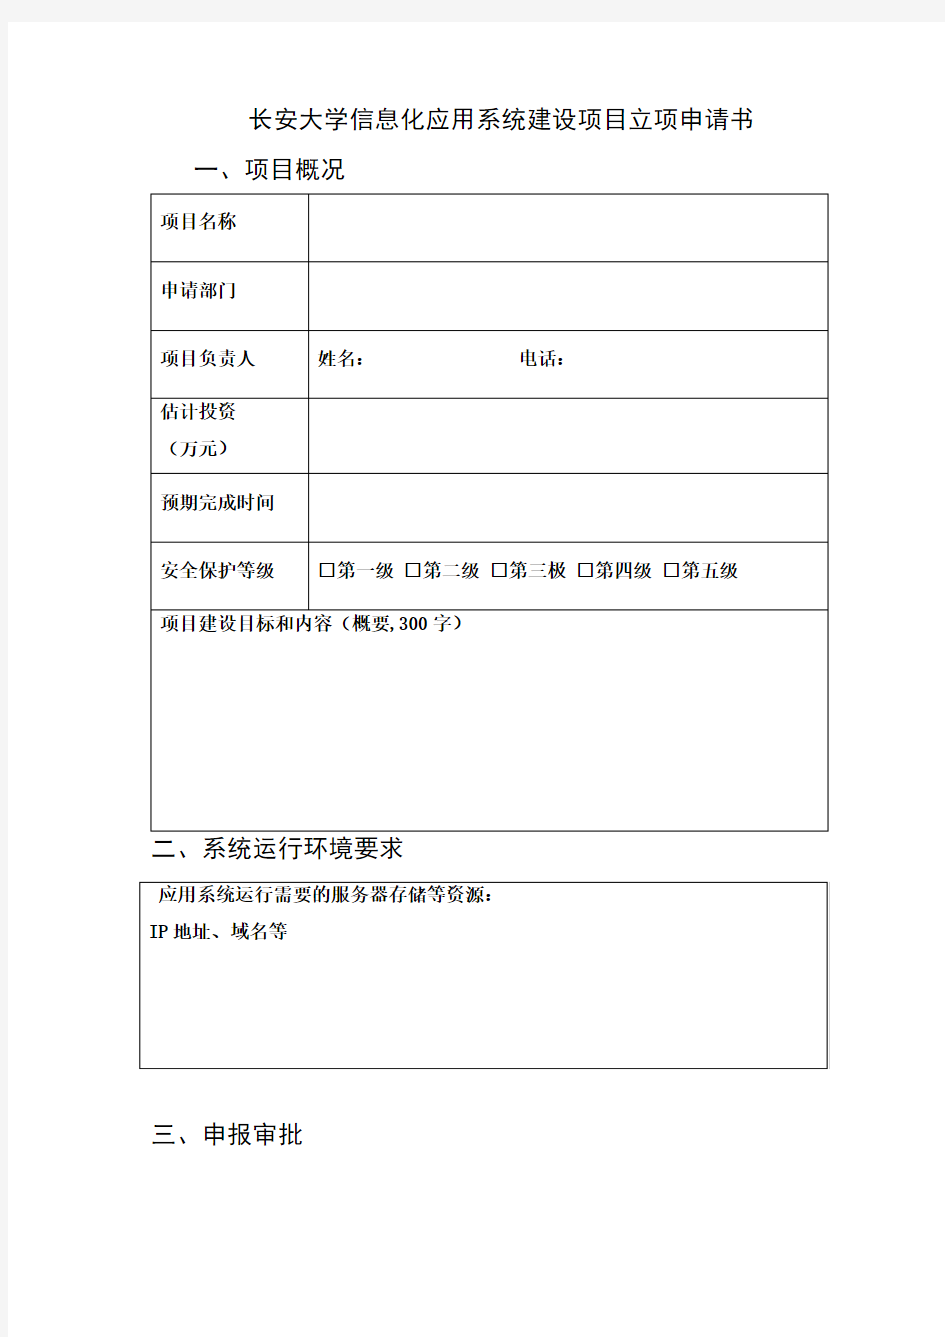 长安大学信息化应用系统建设项目立项申请书模板